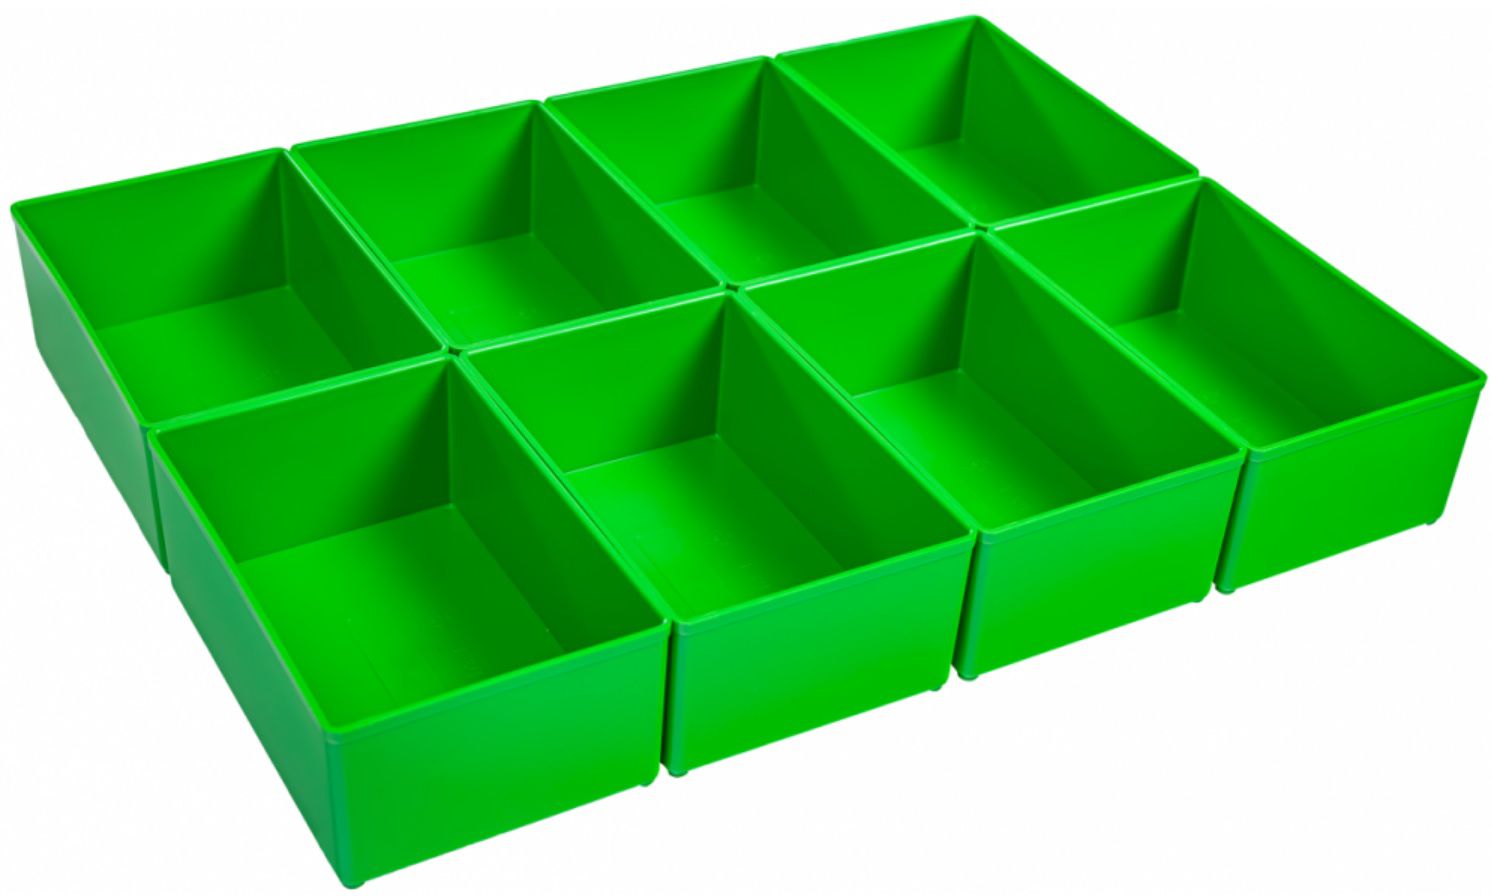 Insetbox D3 grün BSS für L-Boxx102 + I-Boxx 72 156 x 104 x 63 mm 8 Stk, 6000001713 - Werkzeugkoffer,Sortimentskoffer,Behälter